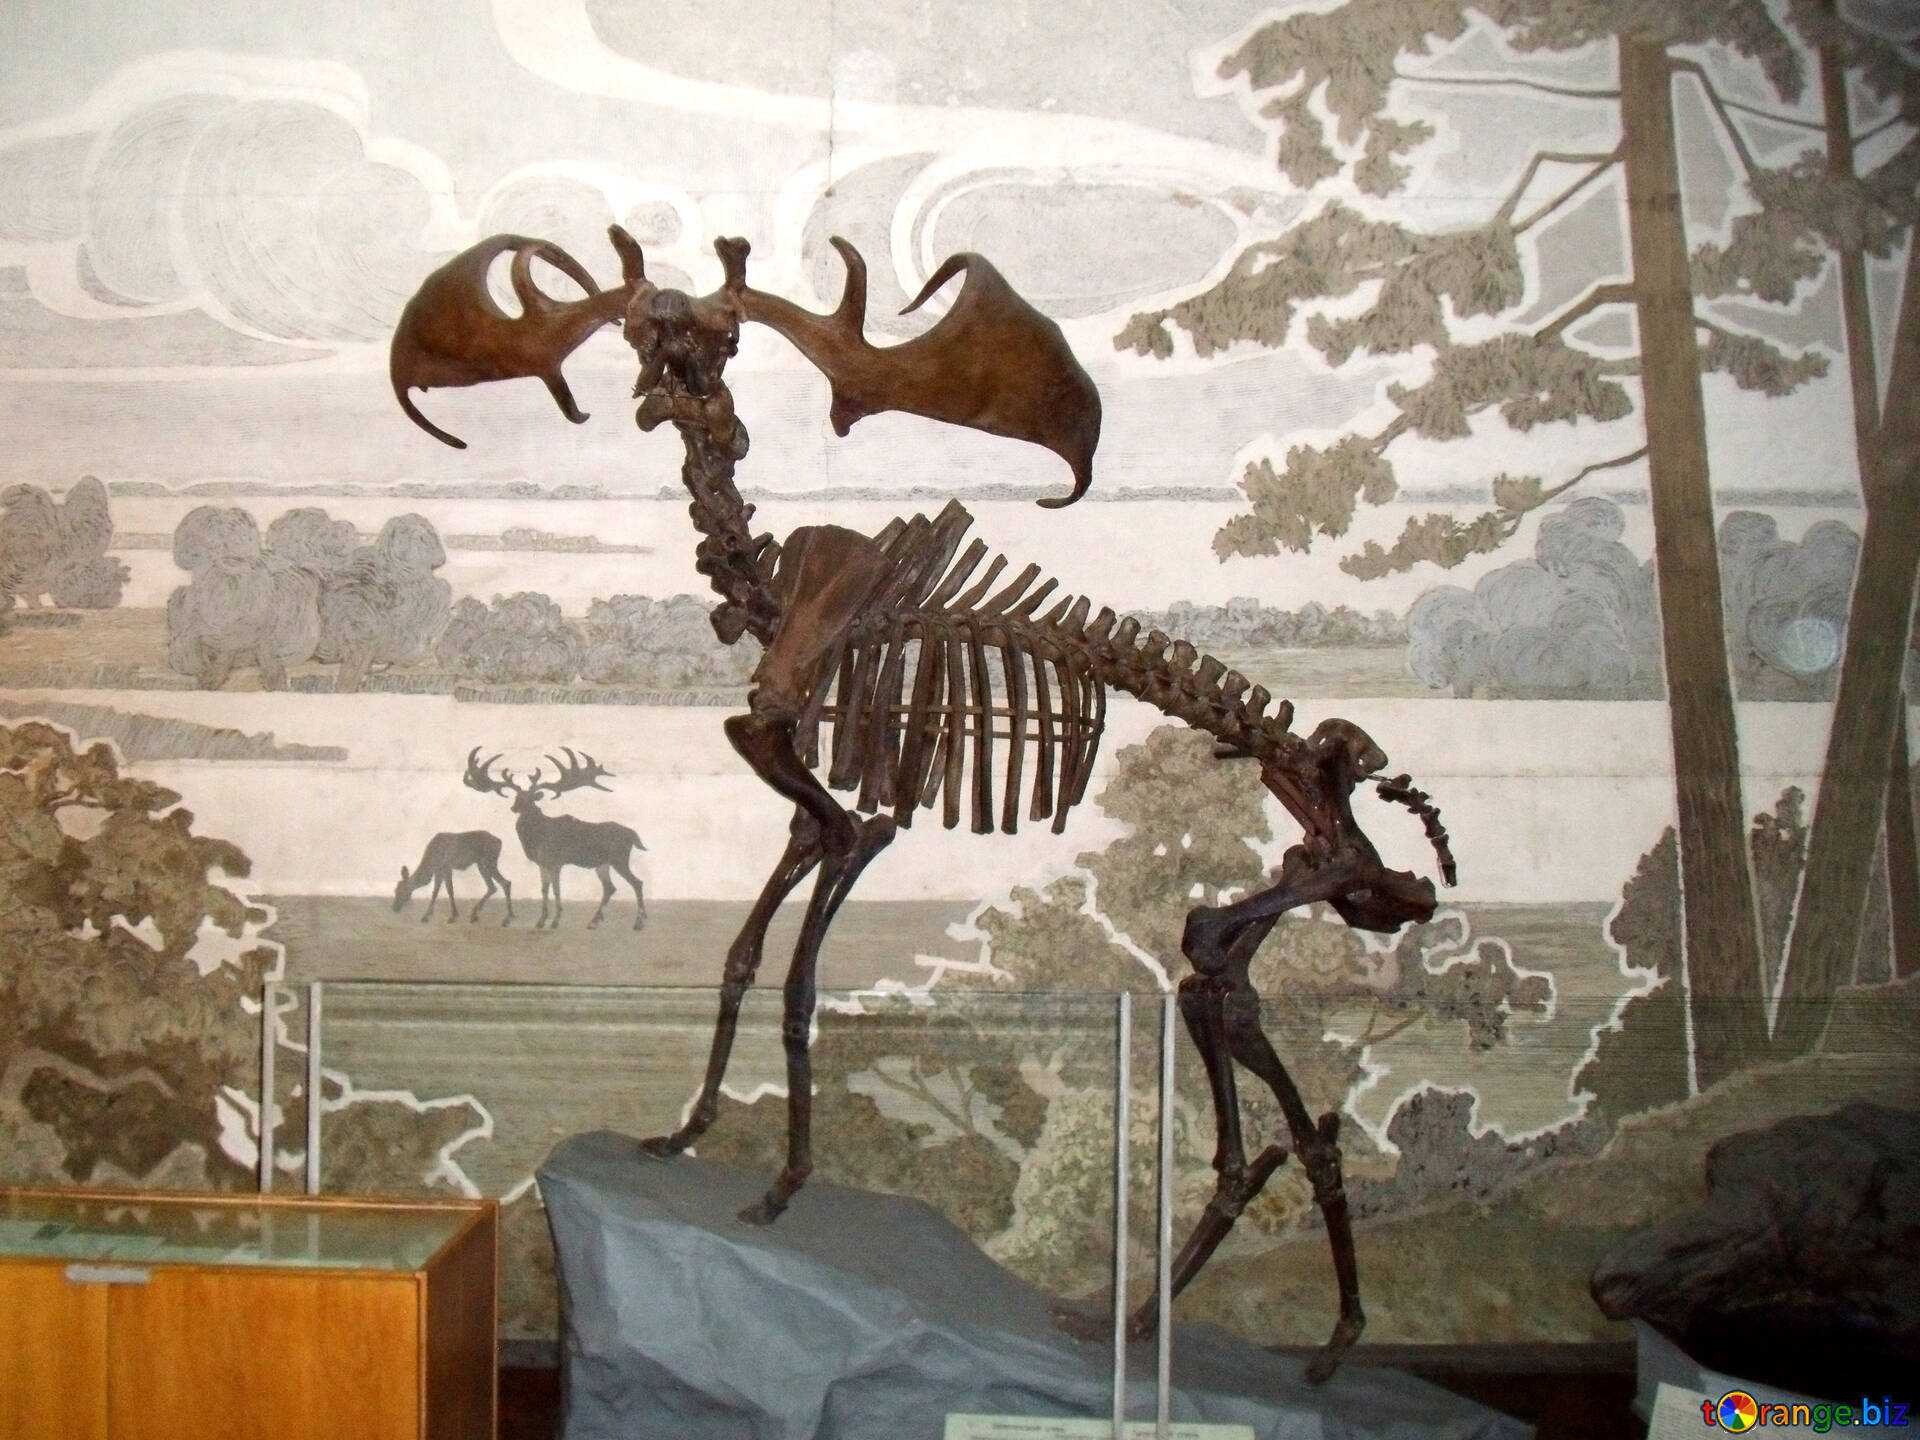 Лось кости. Скелет лося. Скелет лосенка. Скелеты древних животных. Инсталляции из металла в виде скелетов.